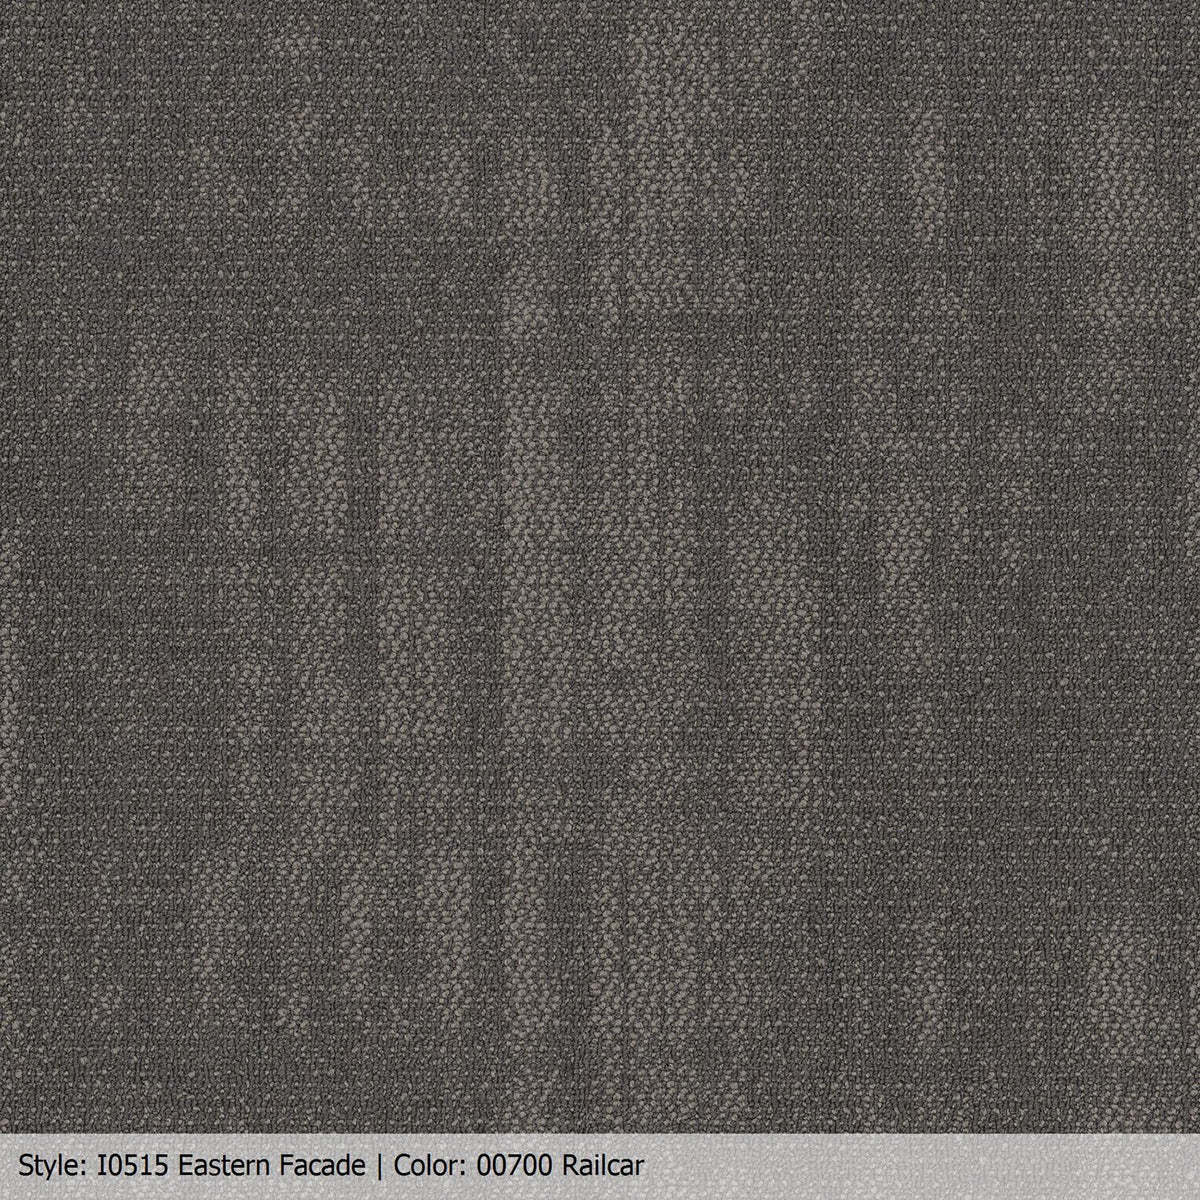 Patcraft - Urban Relief Collection - Eastern Facade Carpet Tile - Railcar 00700